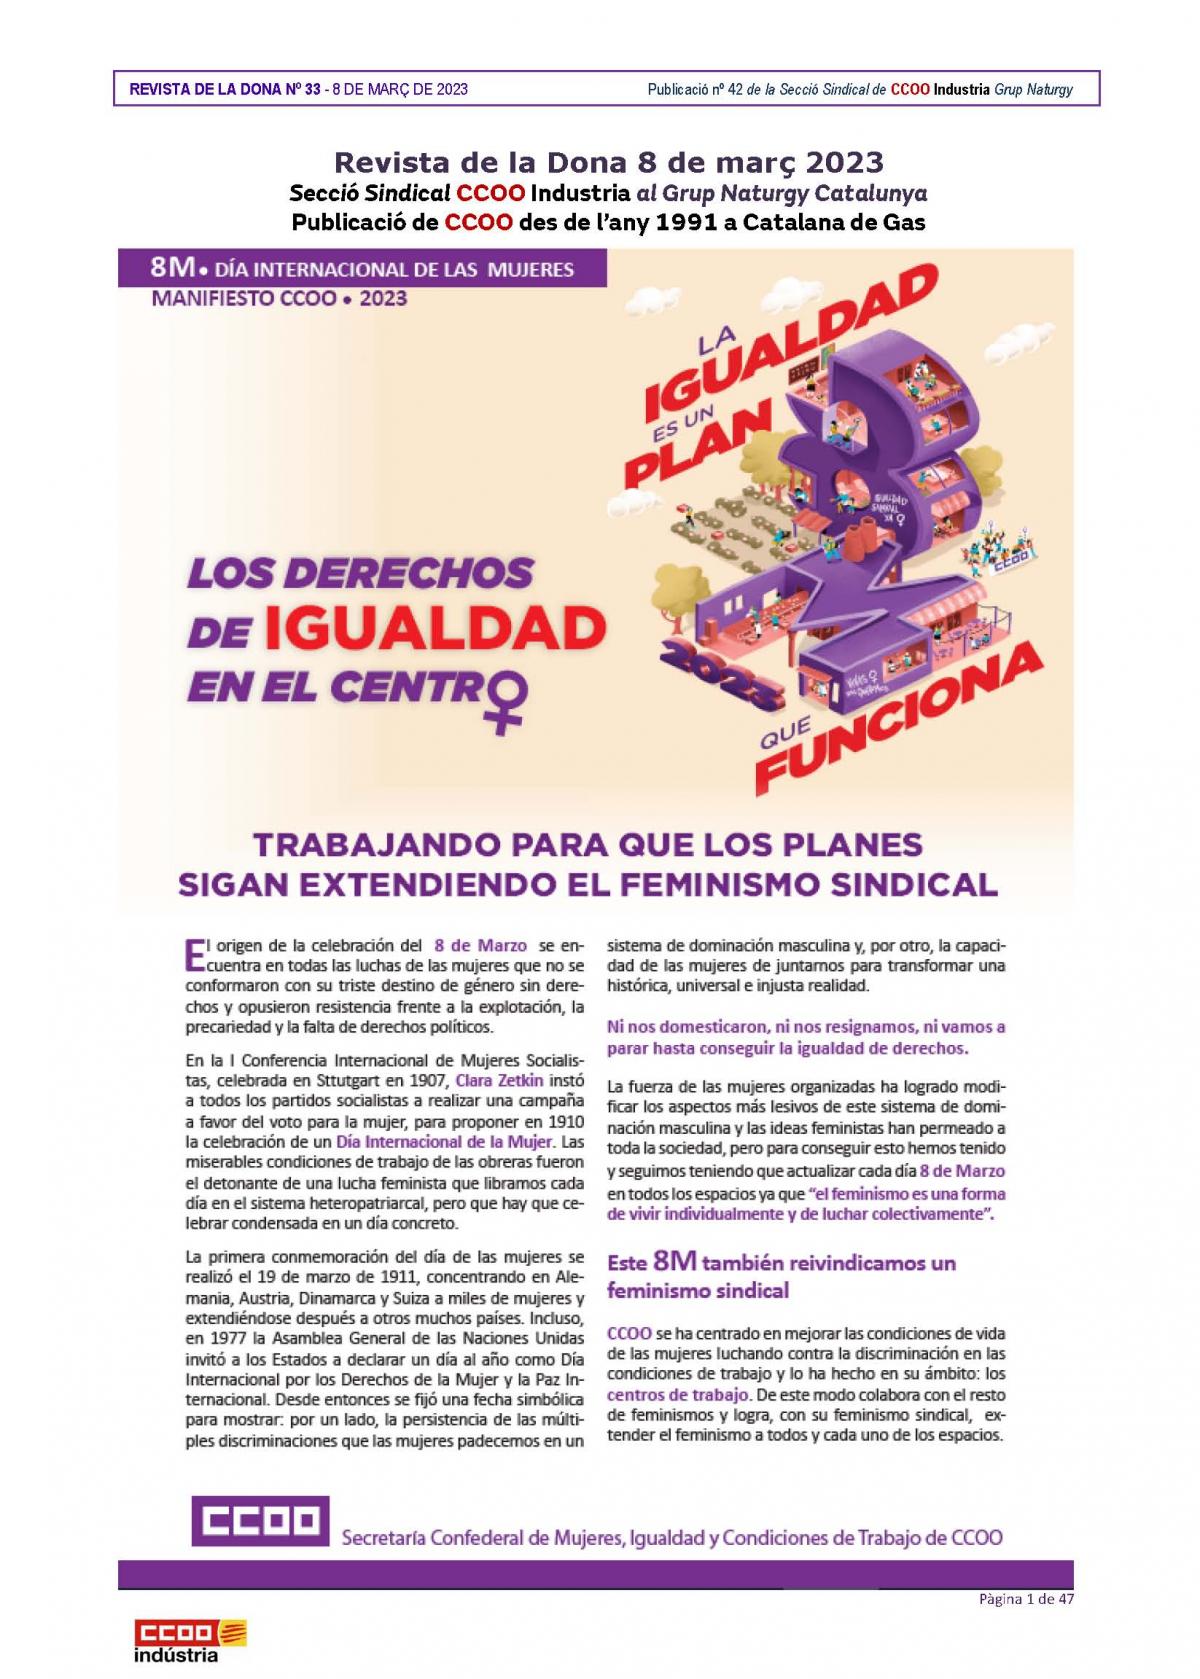 Revista de la Dona 8 de Març, 33 (Març de 2023).